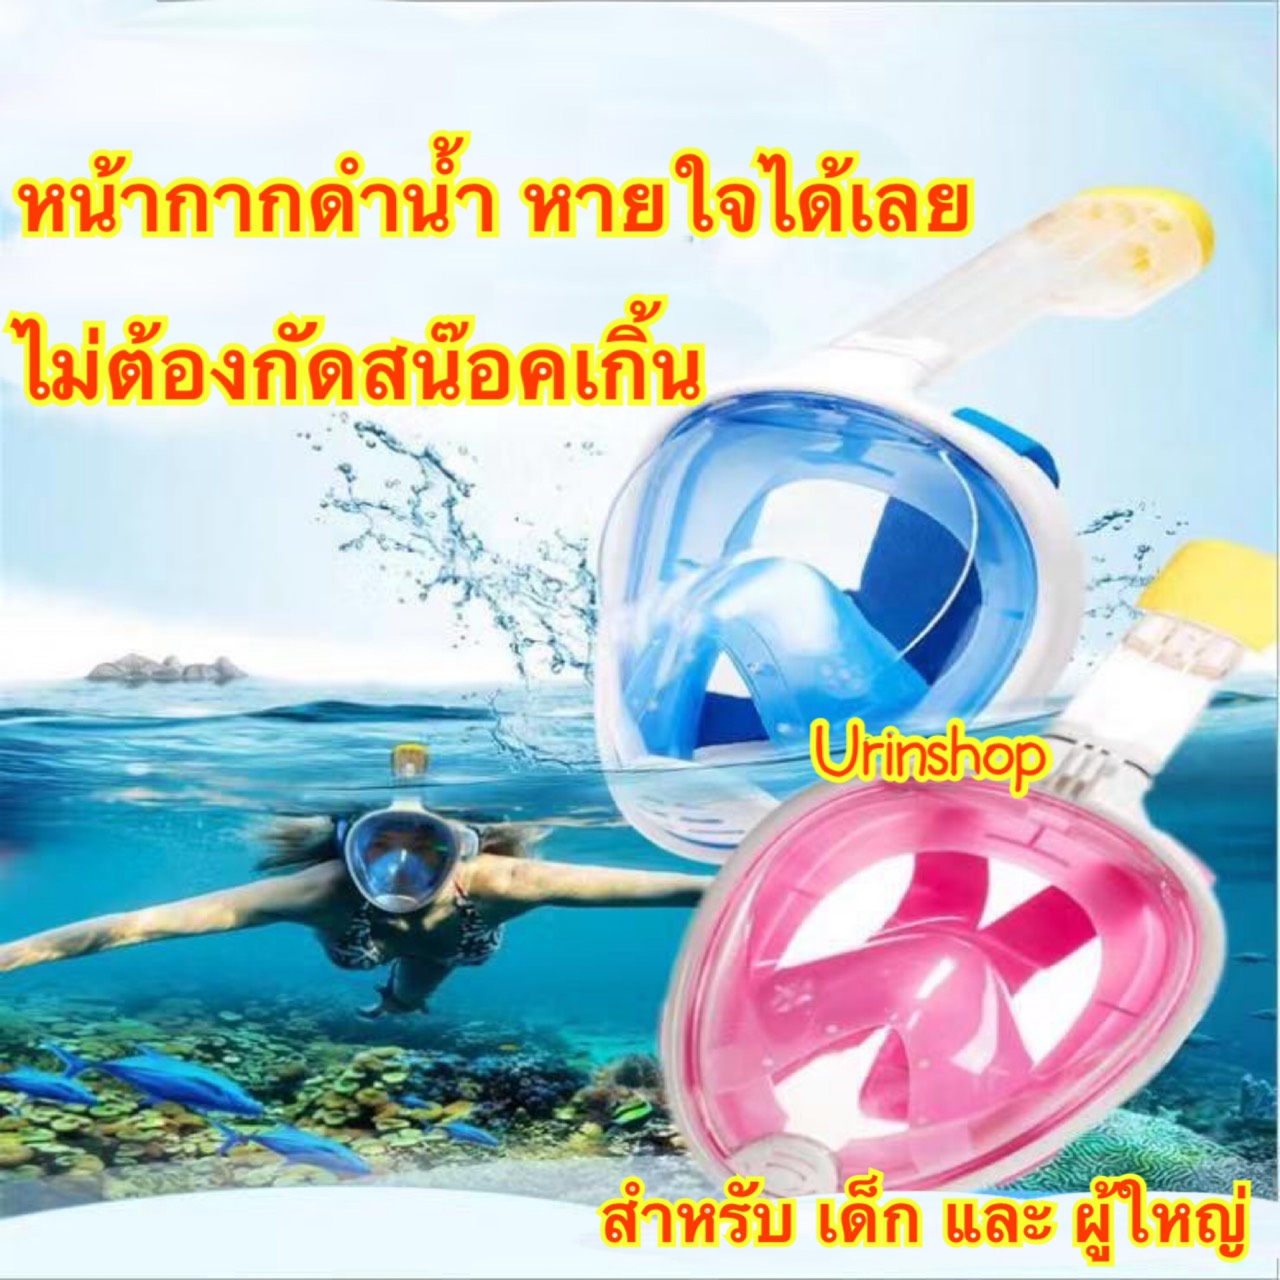 หน้ากากดำน้ำ เด็ก / ผู้ใหญ่ หายใจได้เลย ไม่ต้องกัดสน๊อคเกิ้น 4 สี พร้อมส่งจากไทย ที่ดำน้ำ อุปกรณ์ดำน้ำ Urinshop